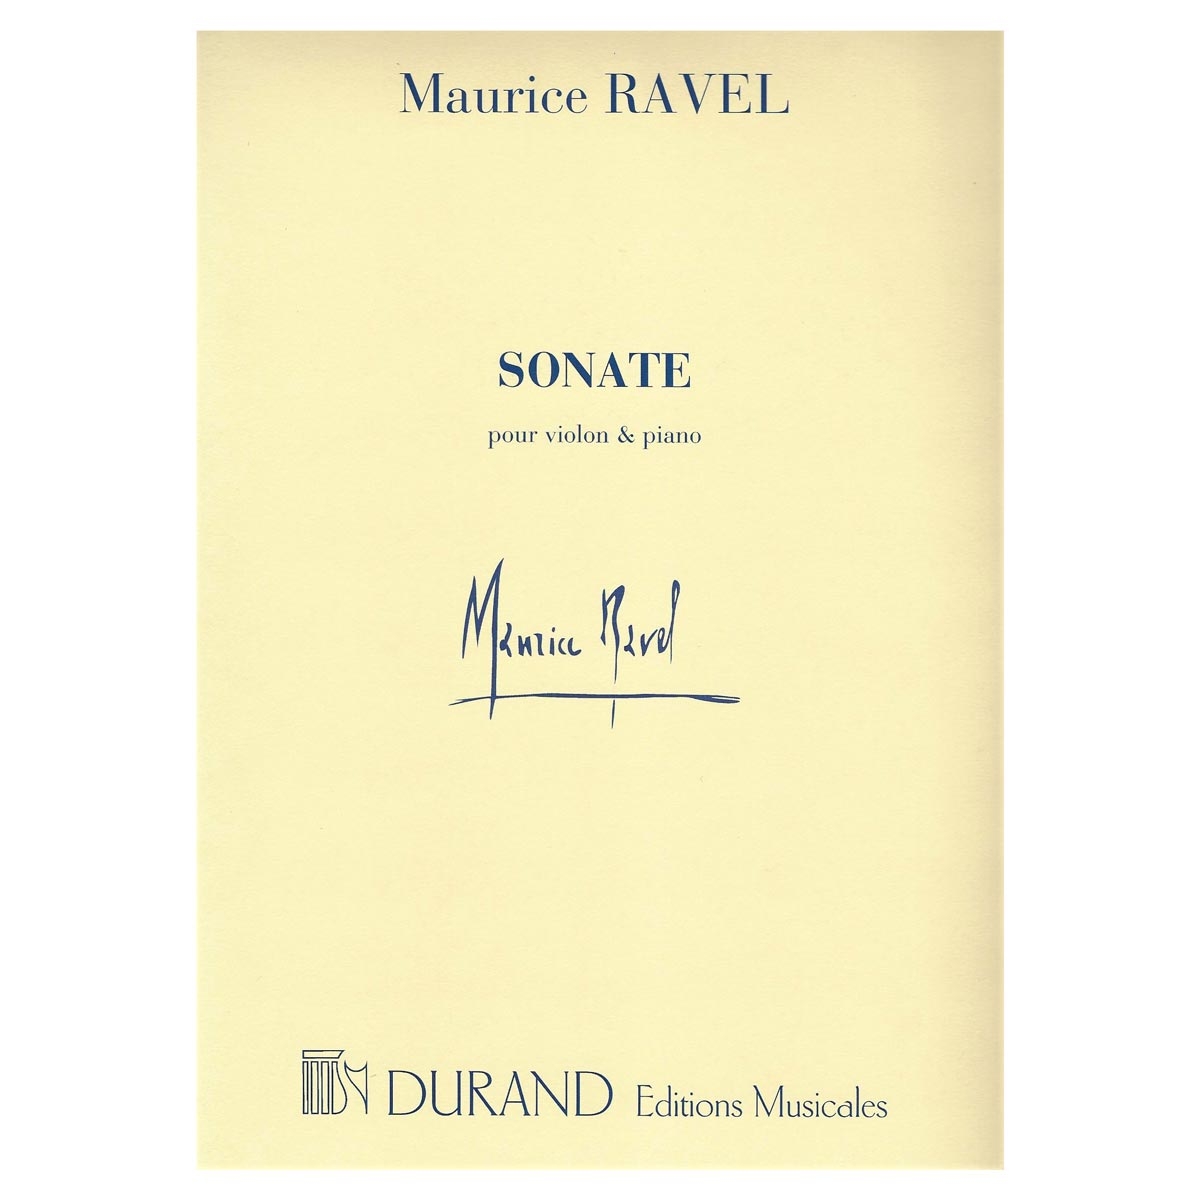 Ravel - Sonate